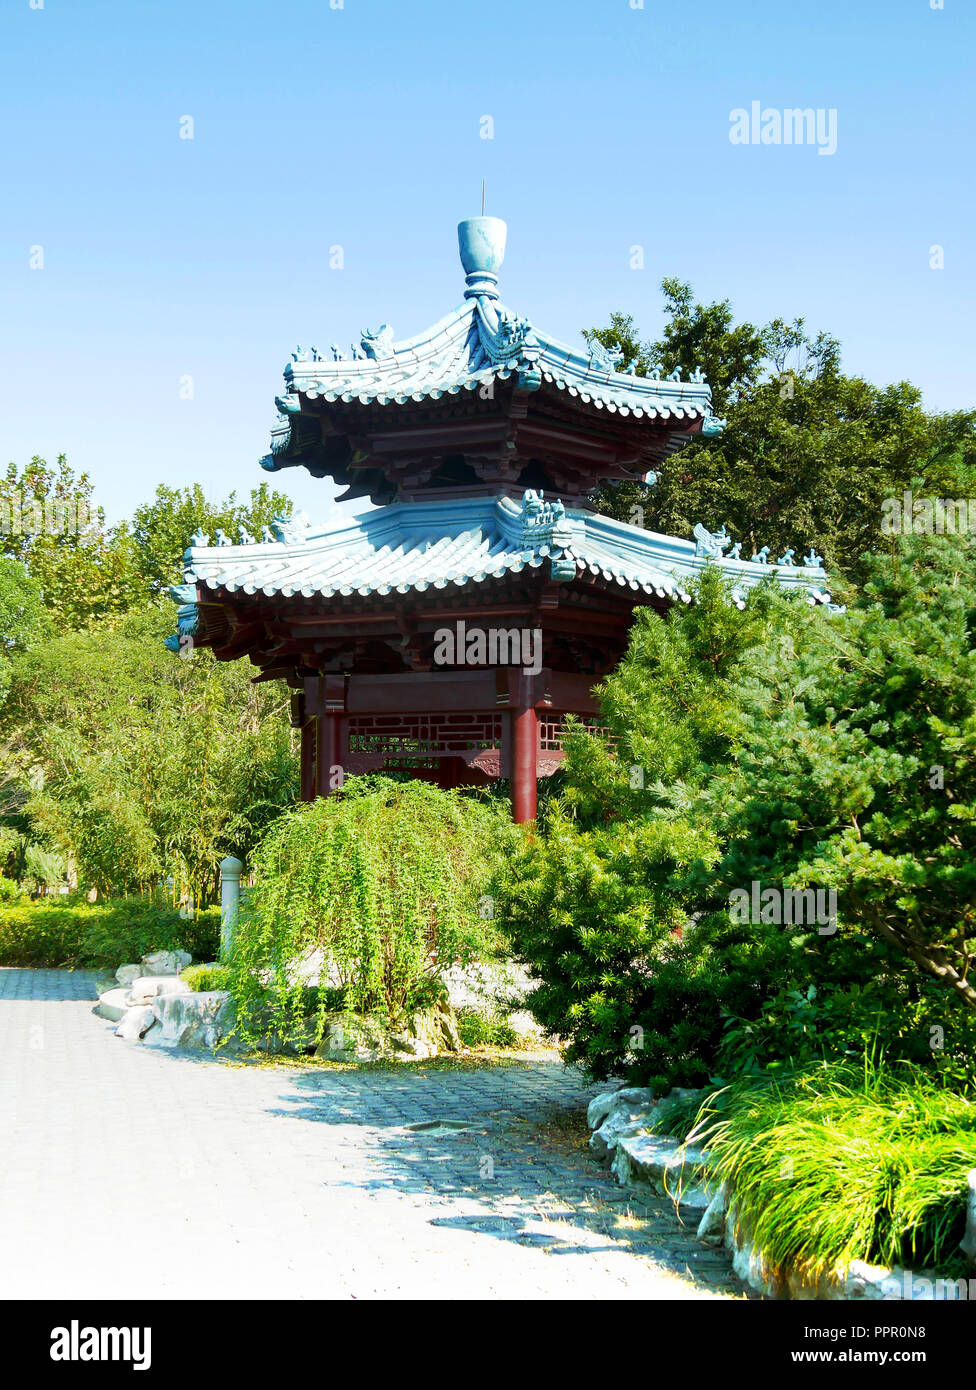 Chinese pagoda Stock Photo